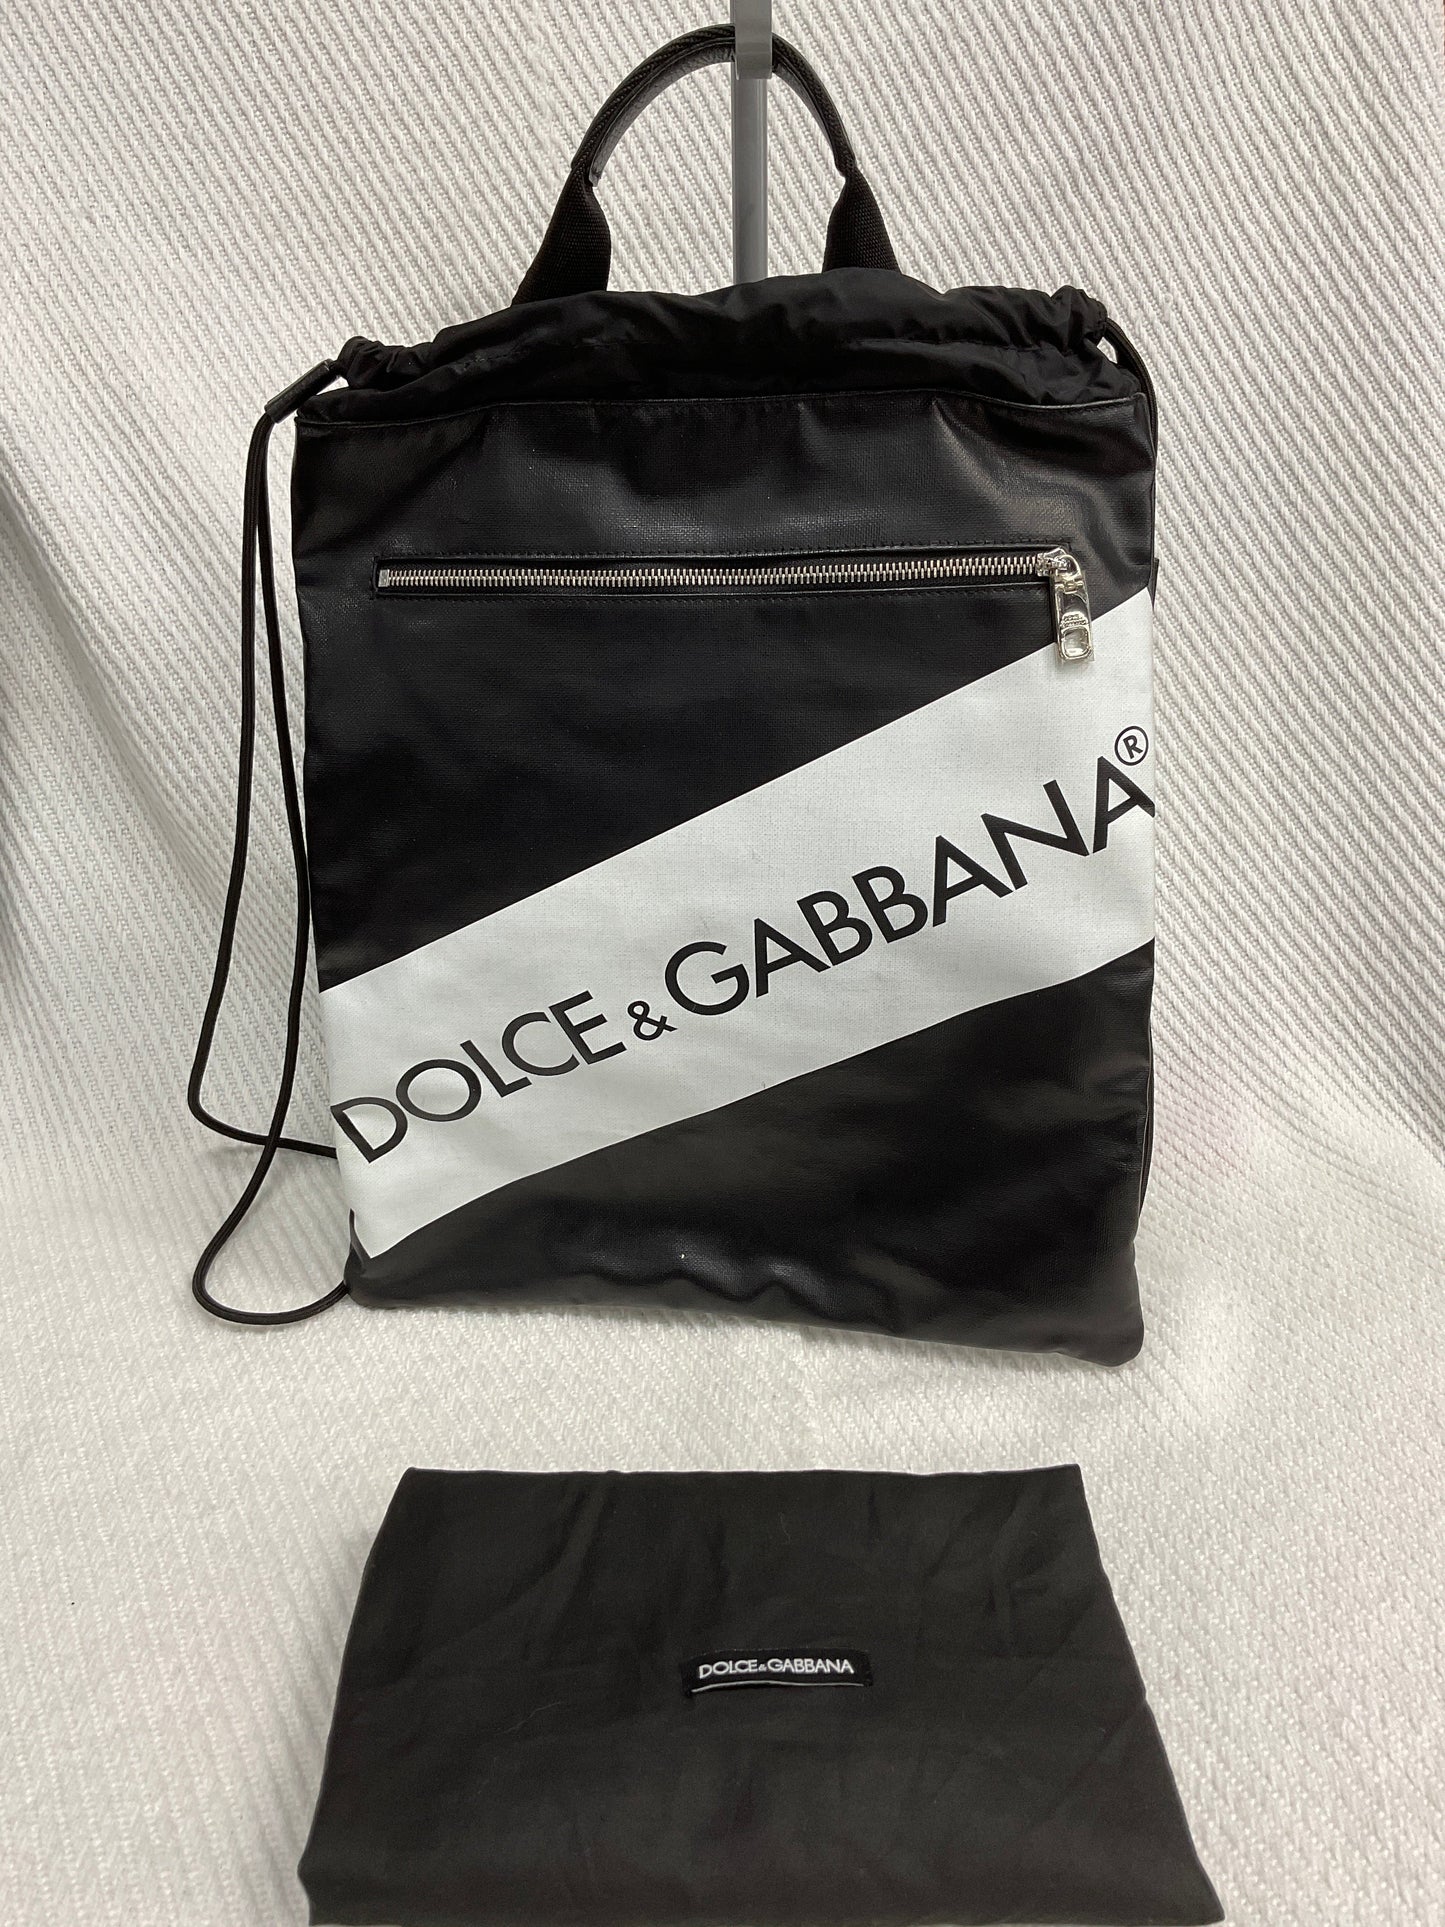 Backpack Luxury Designer Dolce And Gabbana, Size Medium